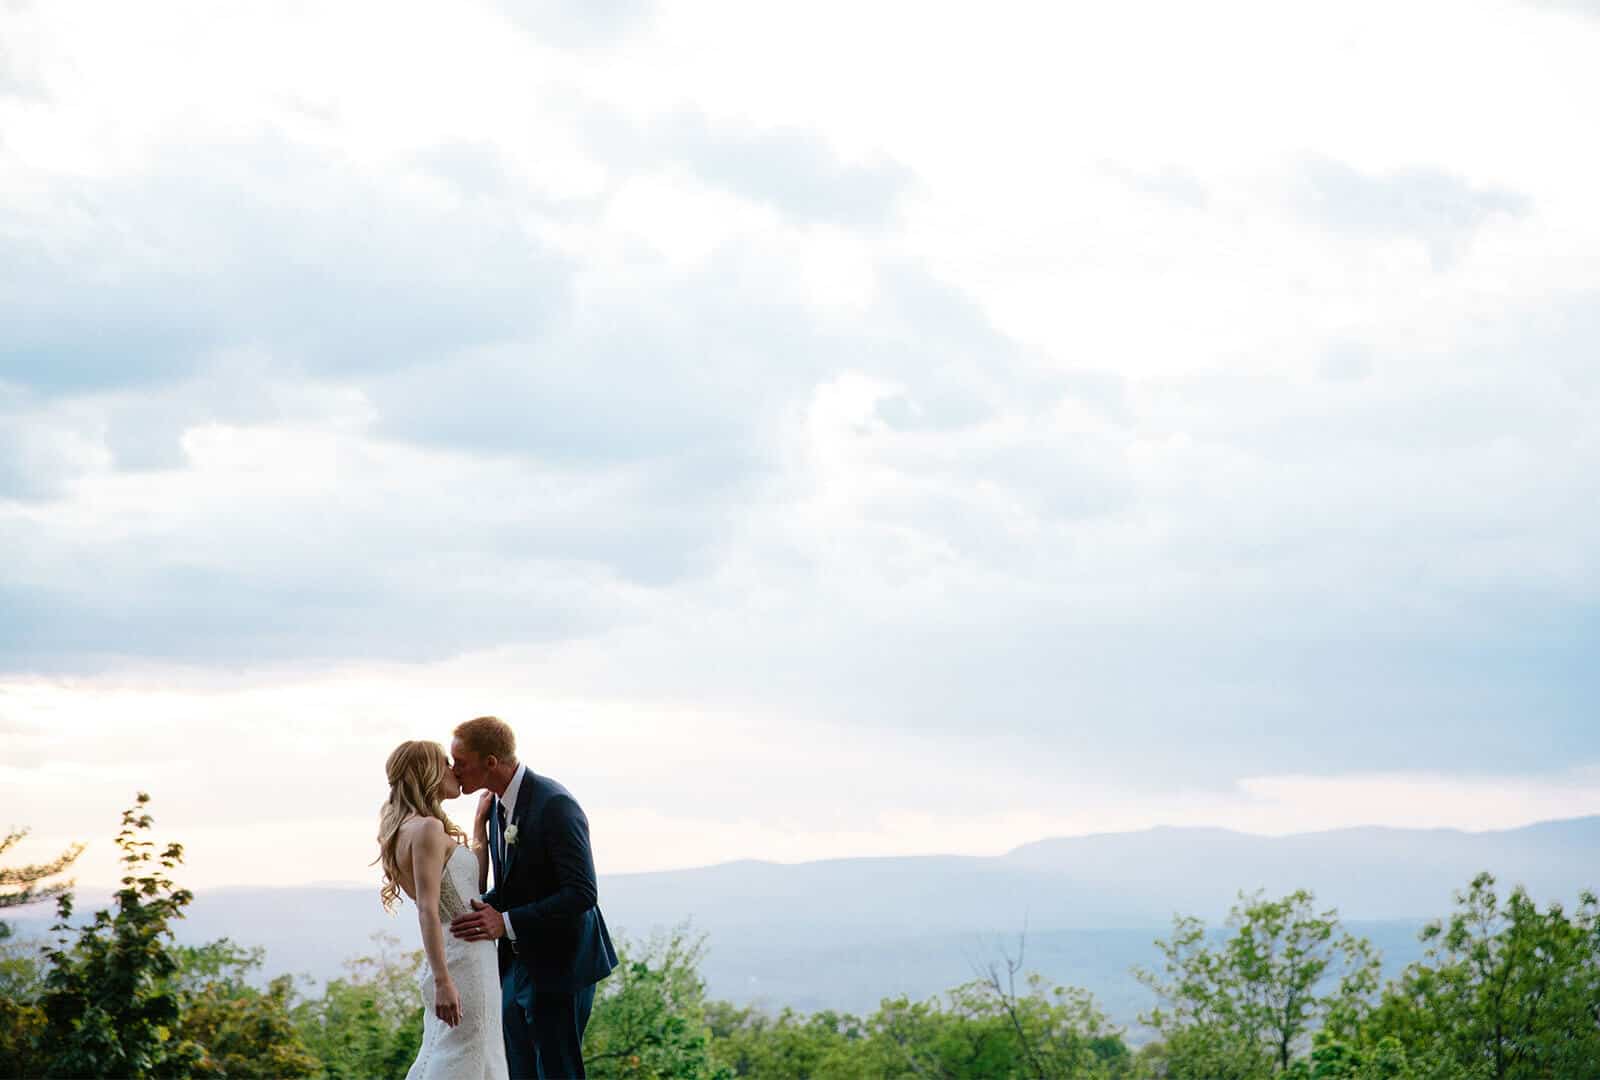 Hudson Valley wedding photoshoot